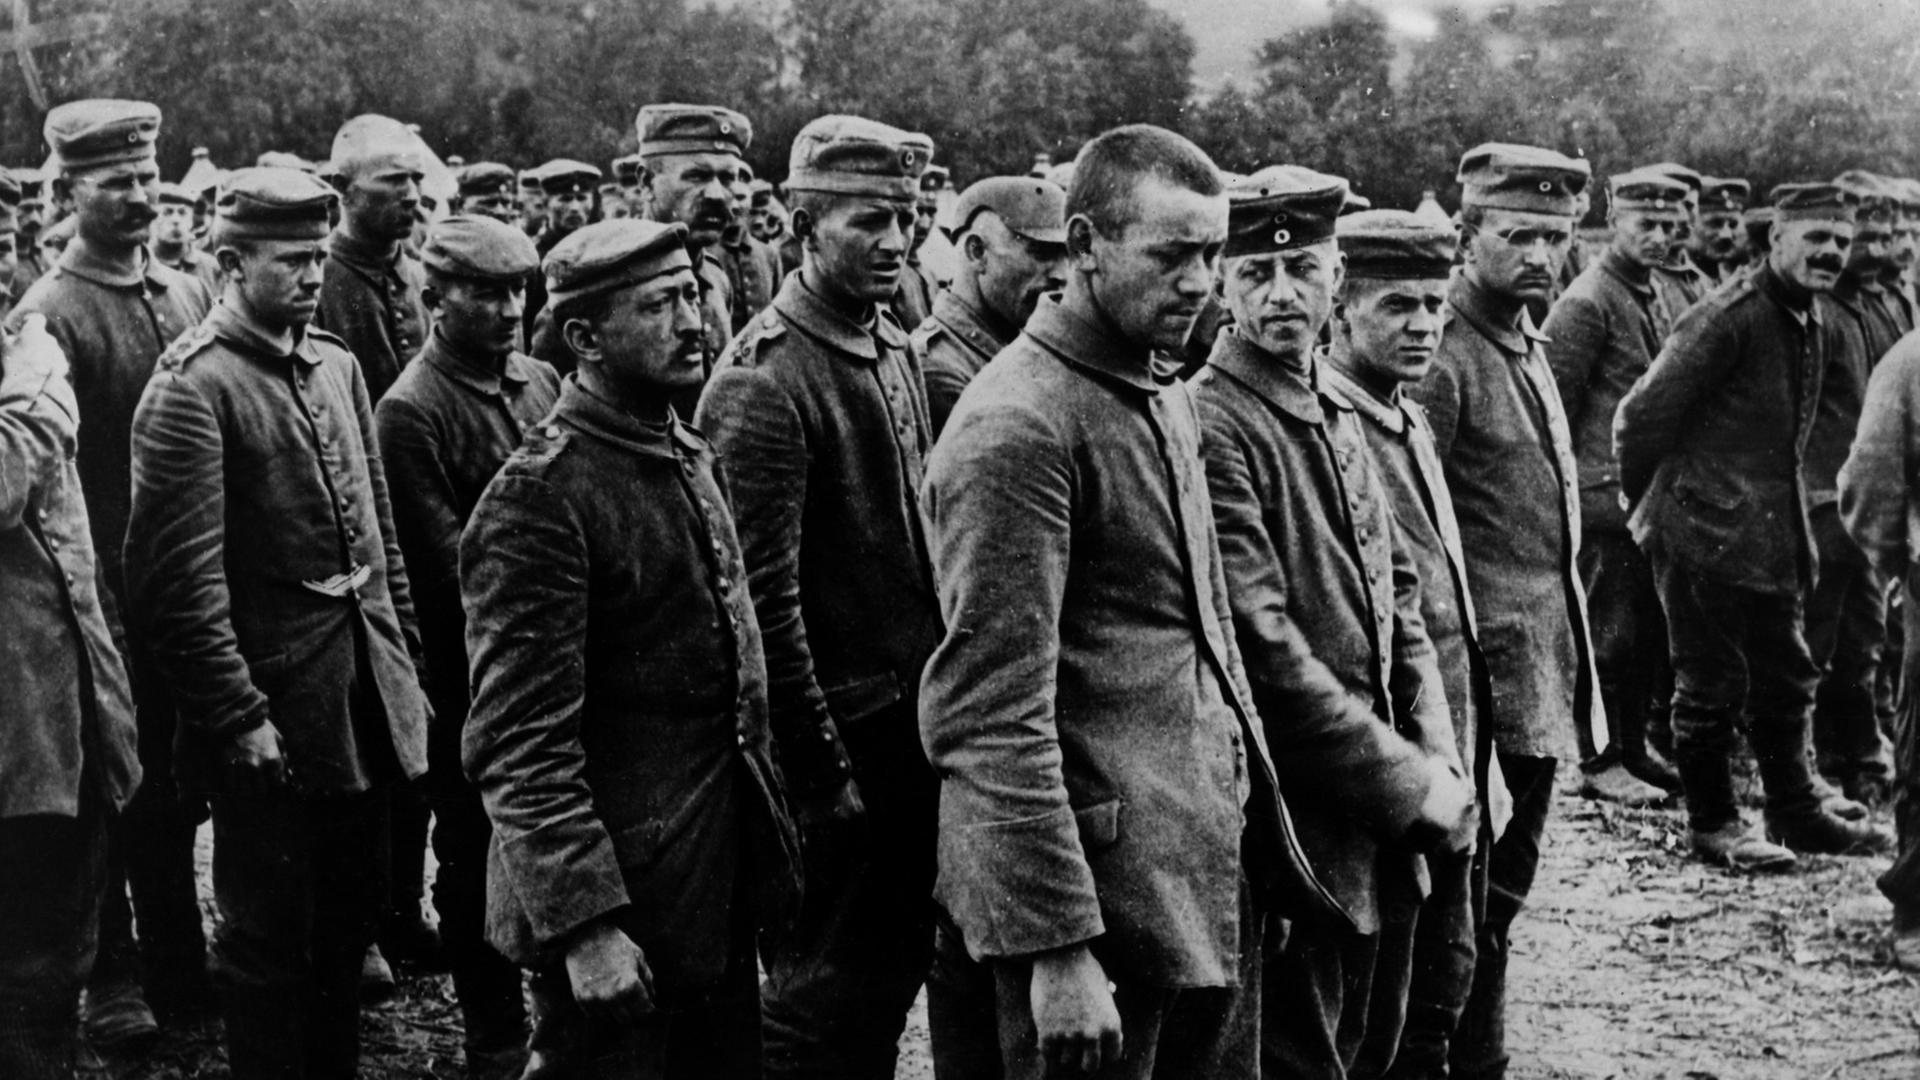 Eine Gruppe gefangener deutscher Soldaten im Jahre 1918 kurz vor Ende des 1. Weltkriegs.